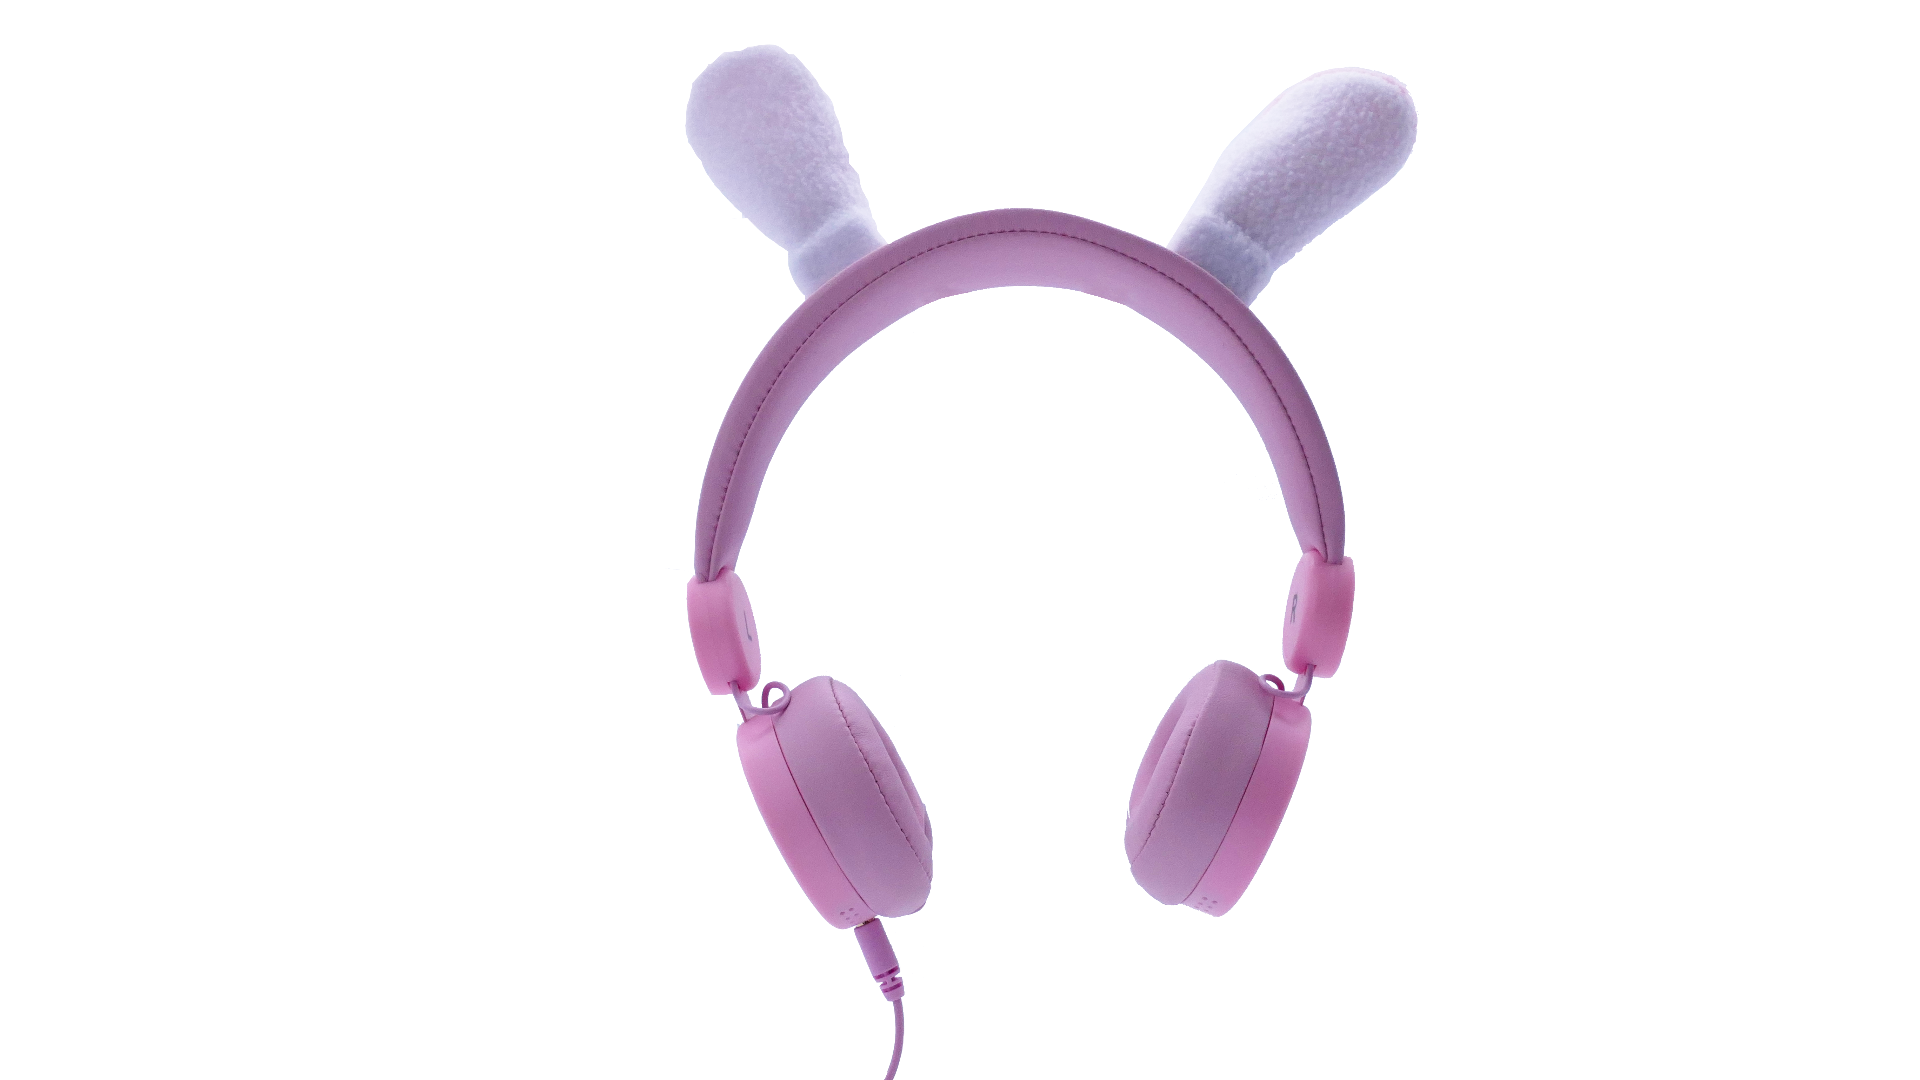 Kidywolf  Headphone Rabbit 